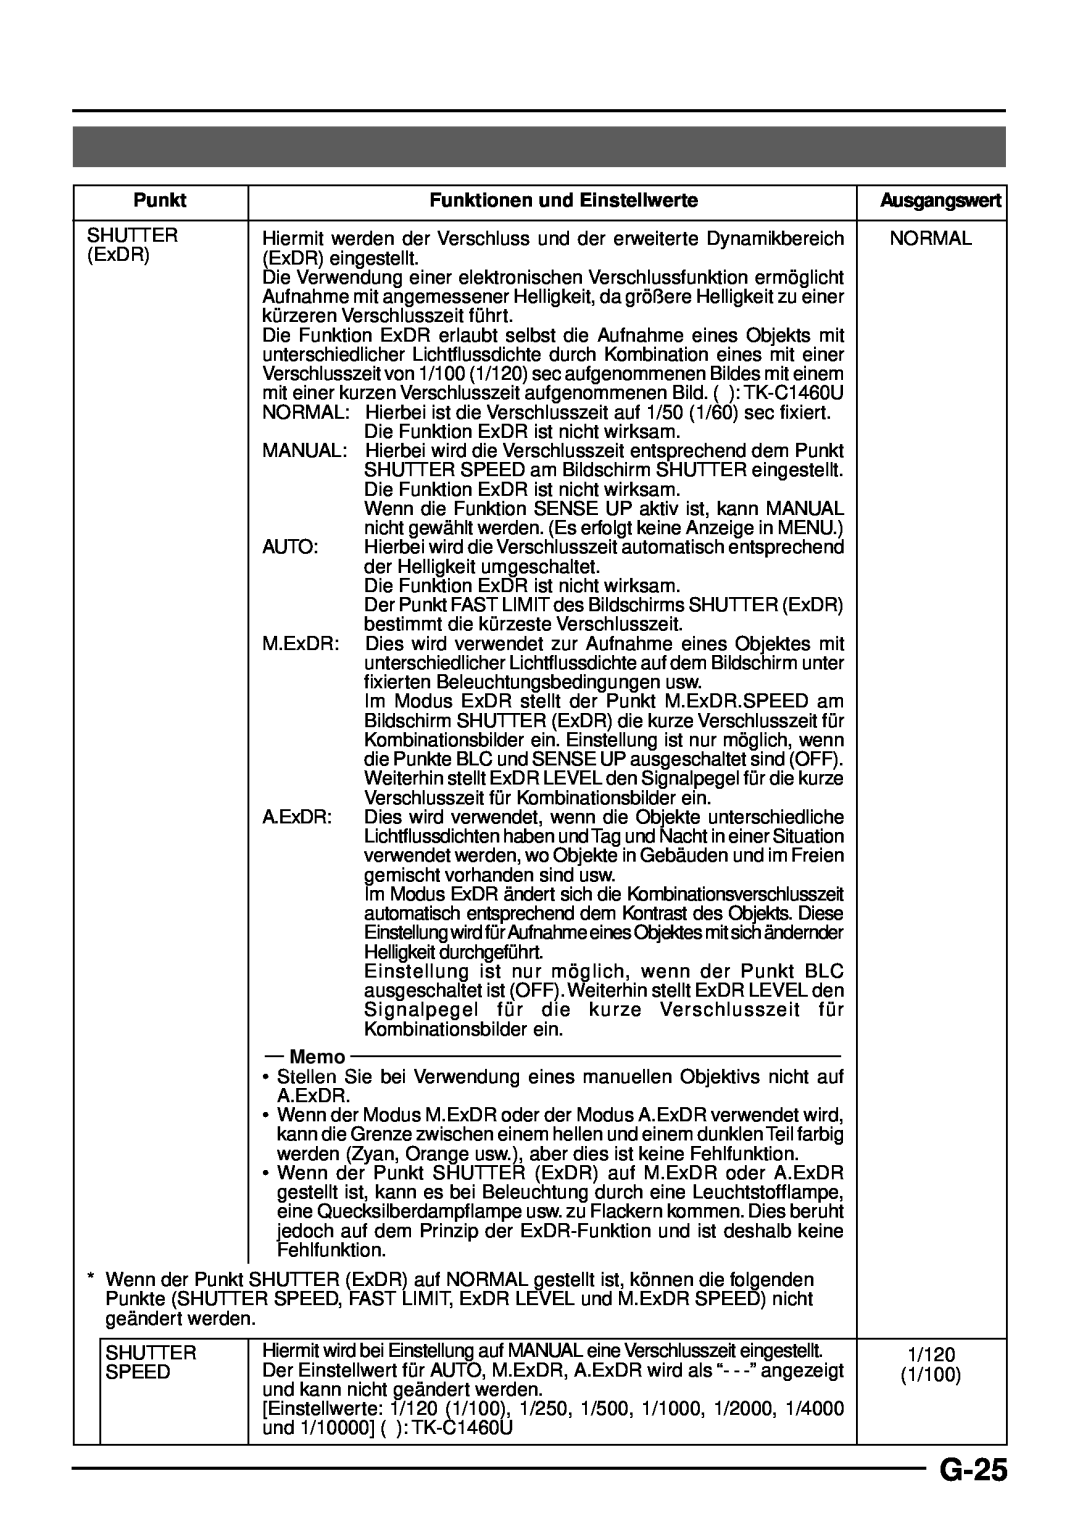 JVC TK-C1460 manual G-25, Punkt, Funktionen und Einstellwerte, Memo 